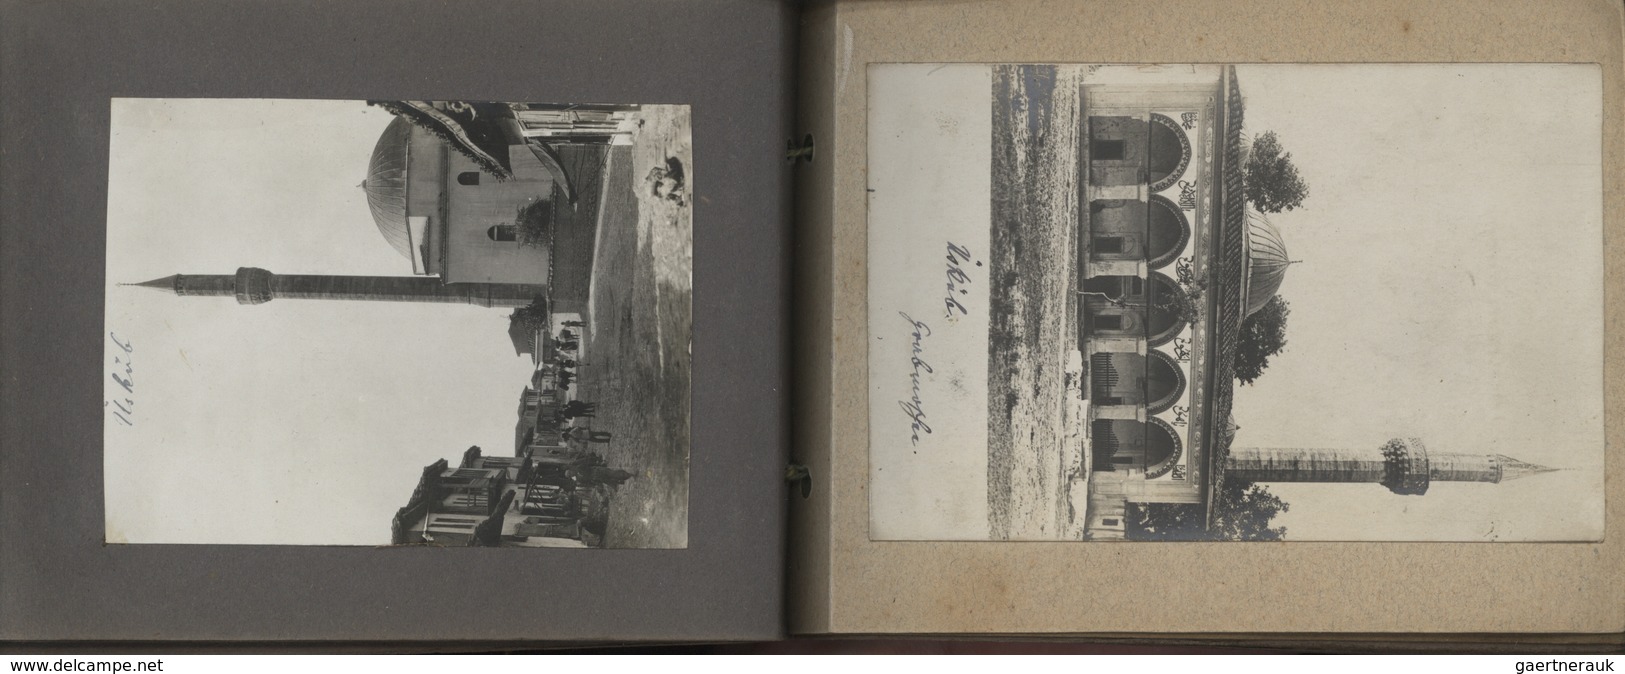 Türkei - Besonderheiten: 1914/1918: Fotoalbum eines Luftschiffers im 1. Weltkrieg mit 78 Fotos und A